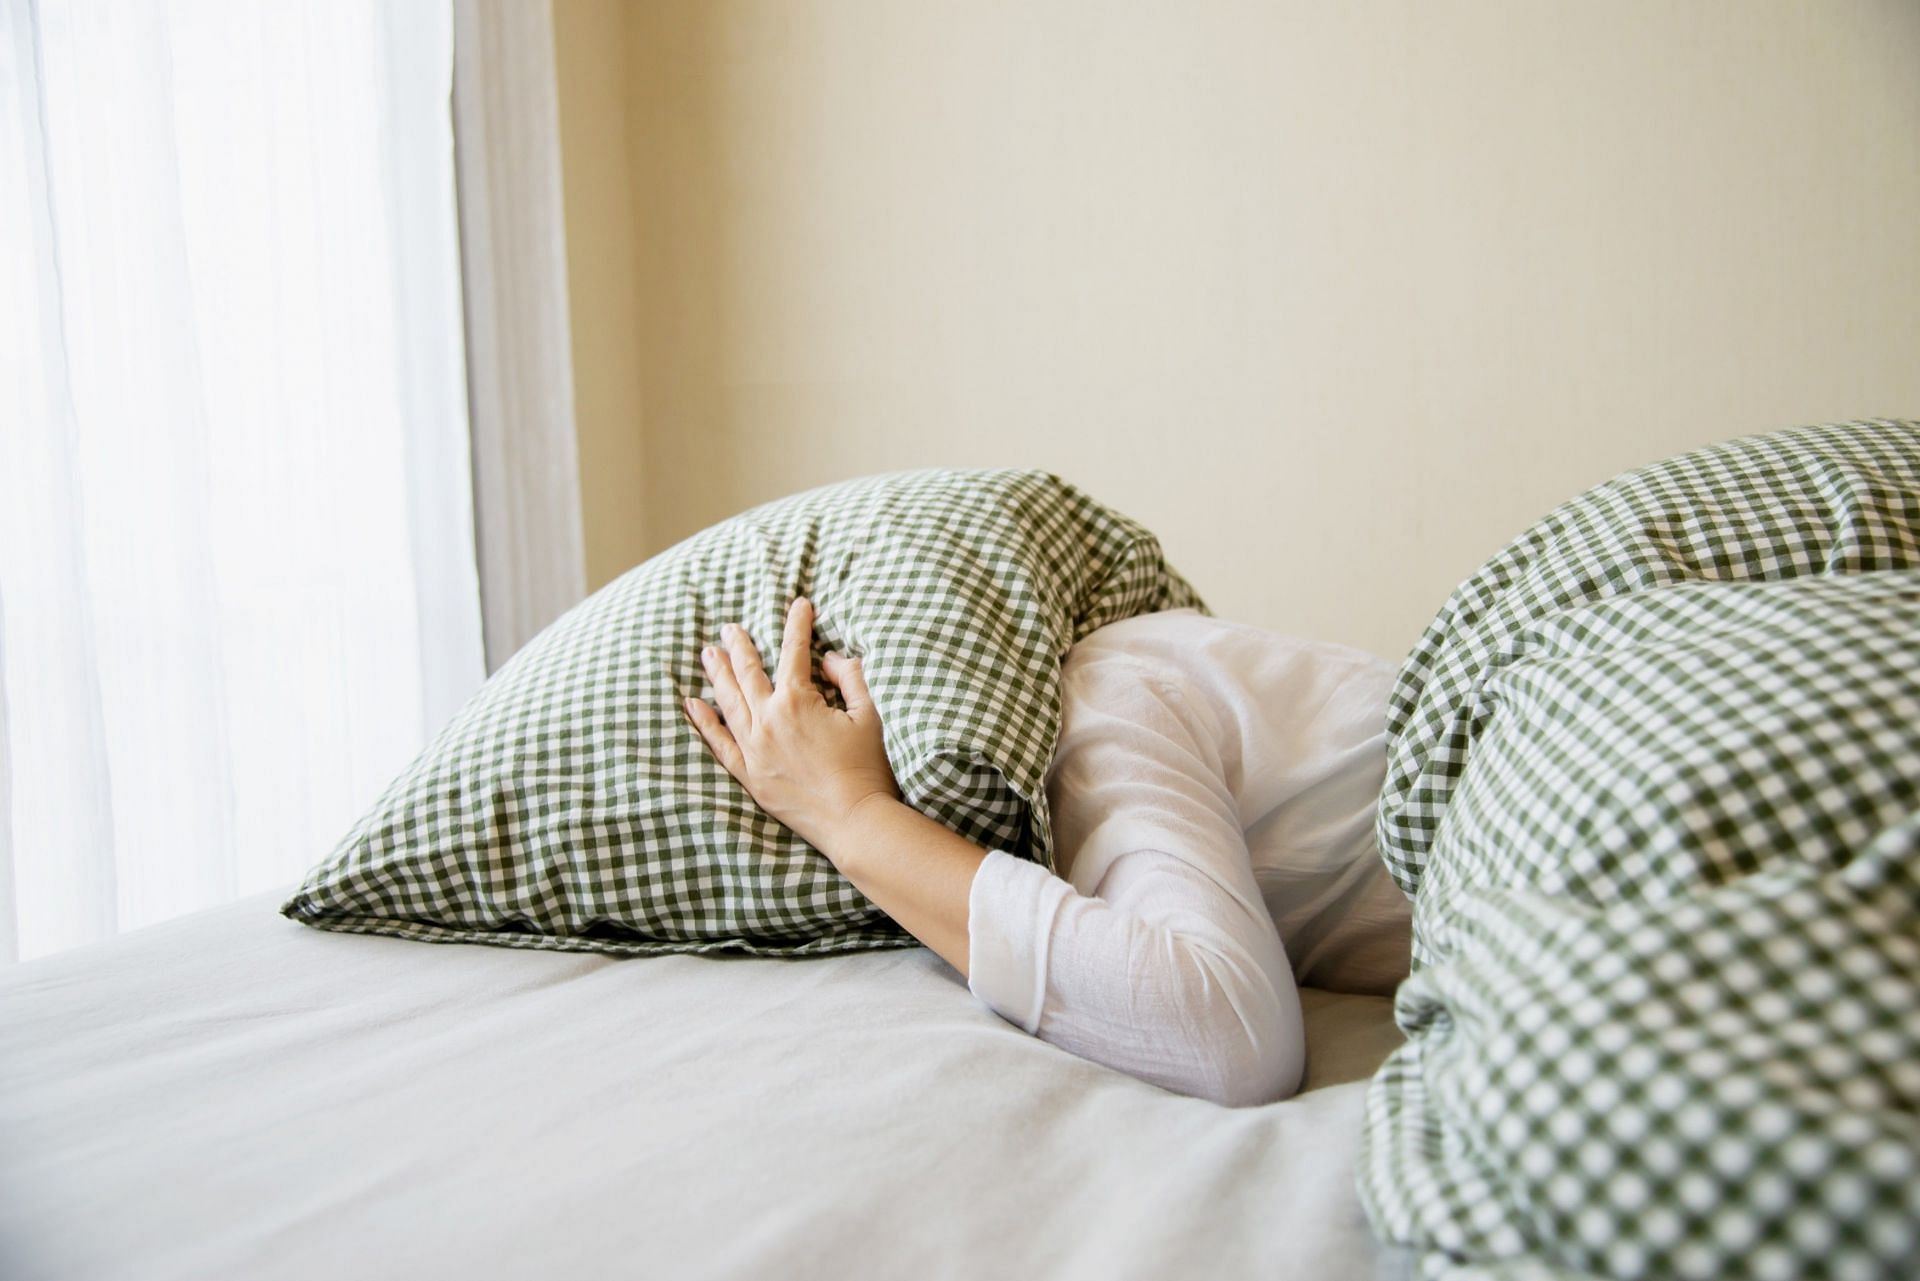 You may opt for home treatment of sleep apnea. (Image via Freepik/Freepik)